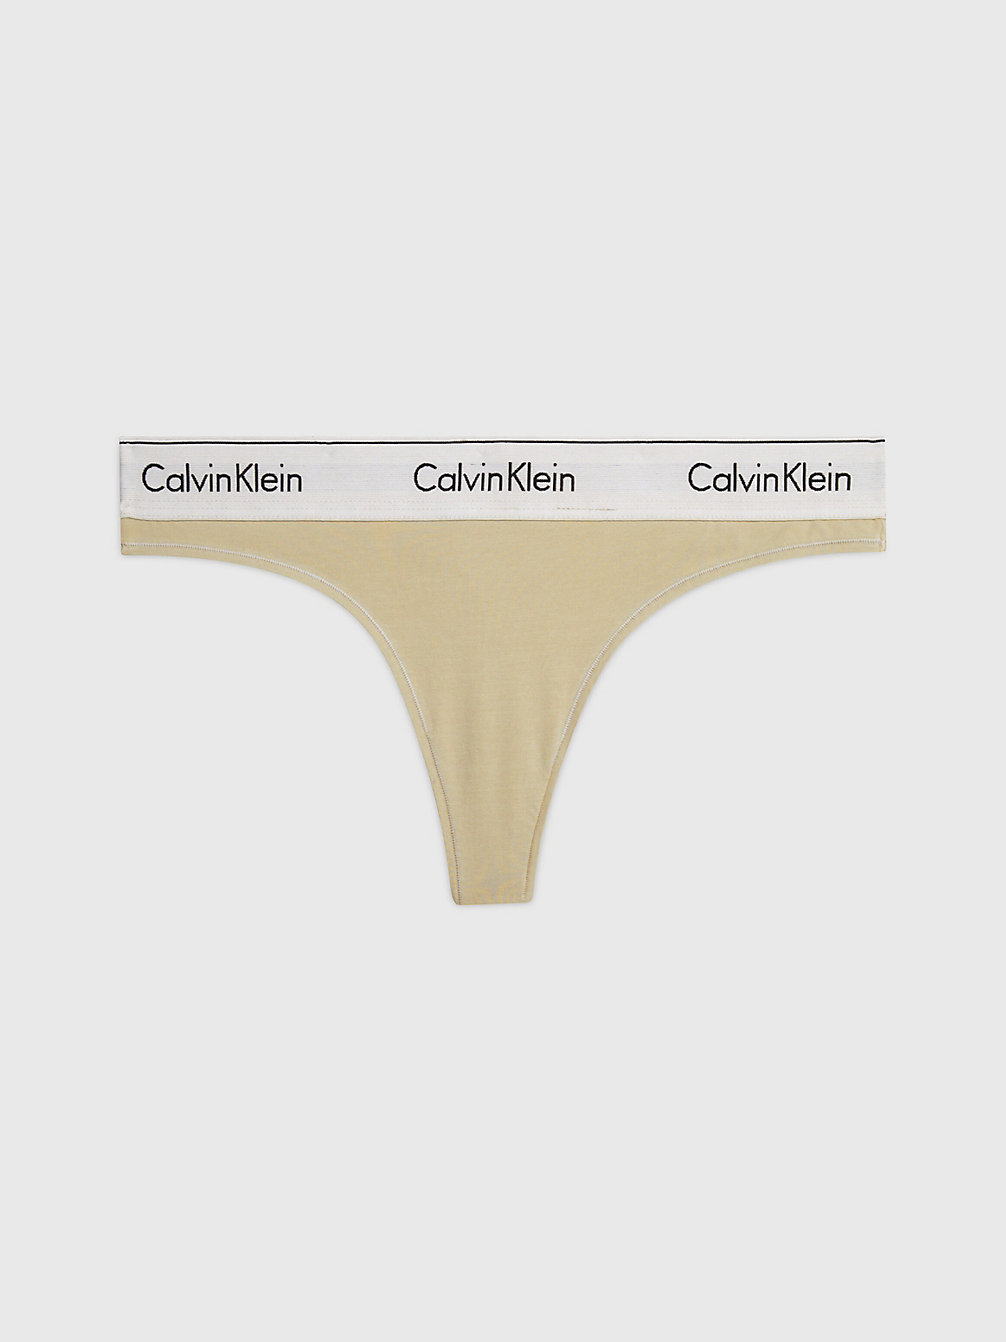 SHELL > Stringi - Modern Cotton > undefined Kobiety - Calvin Klein